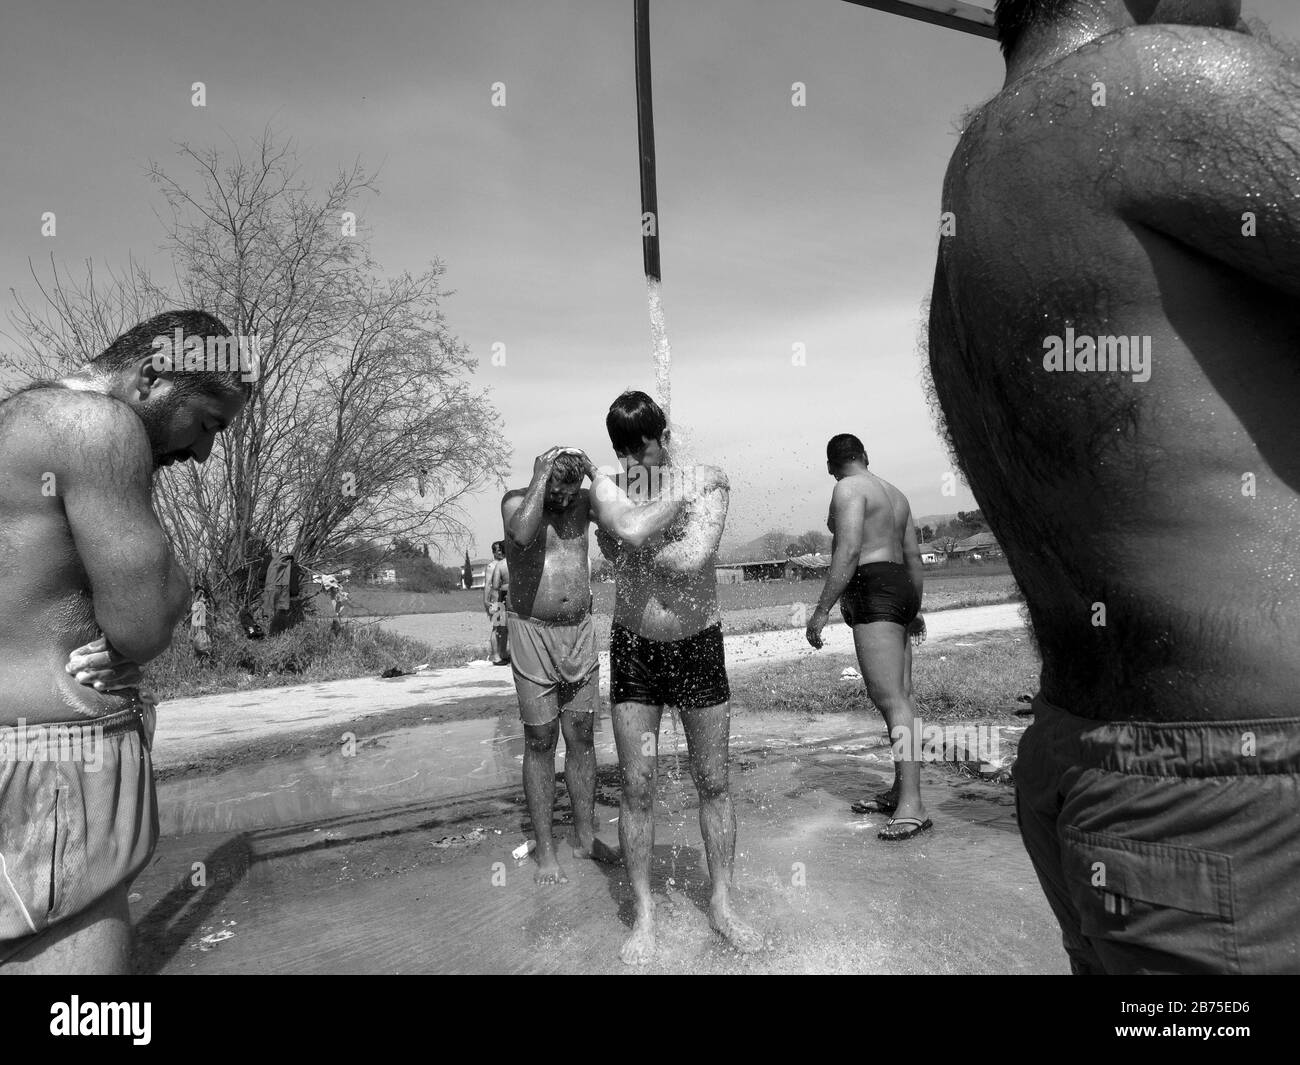 Camp de réfugiés à Idomeni à la frontière avec la Macédoine. Un groupe d'hommes prennent une douche sous un réservoir d'eau d'un agriculteur local. [traduction automatique] Banque D'Images